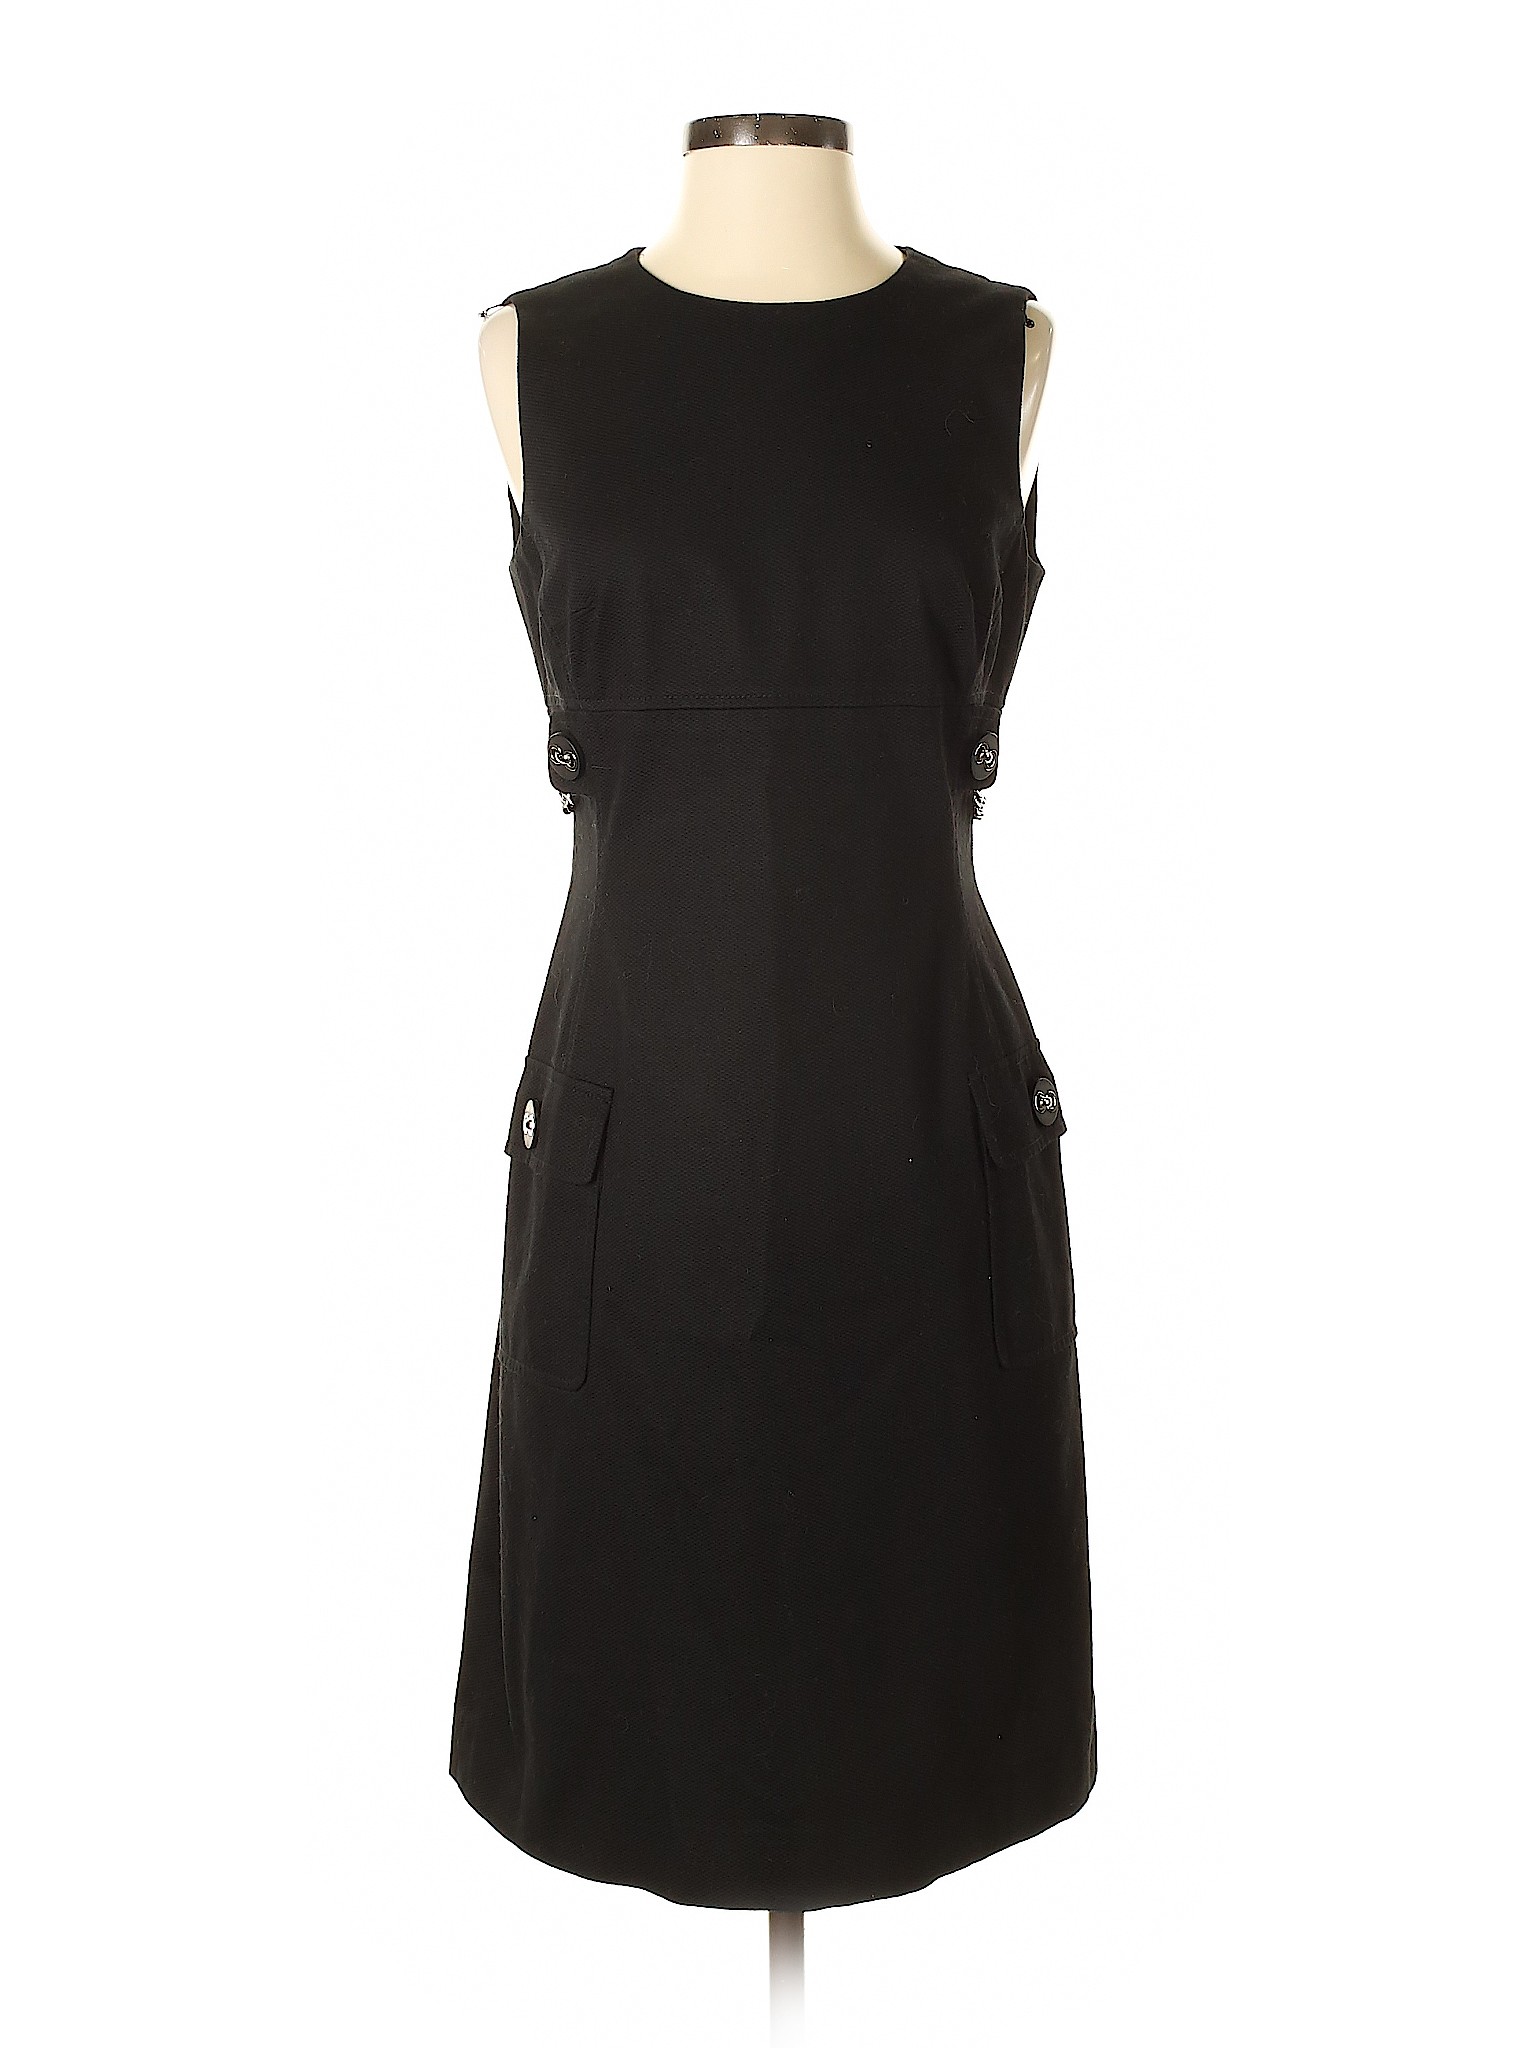 Per Se Women Black Casual Dress 4 | eBay